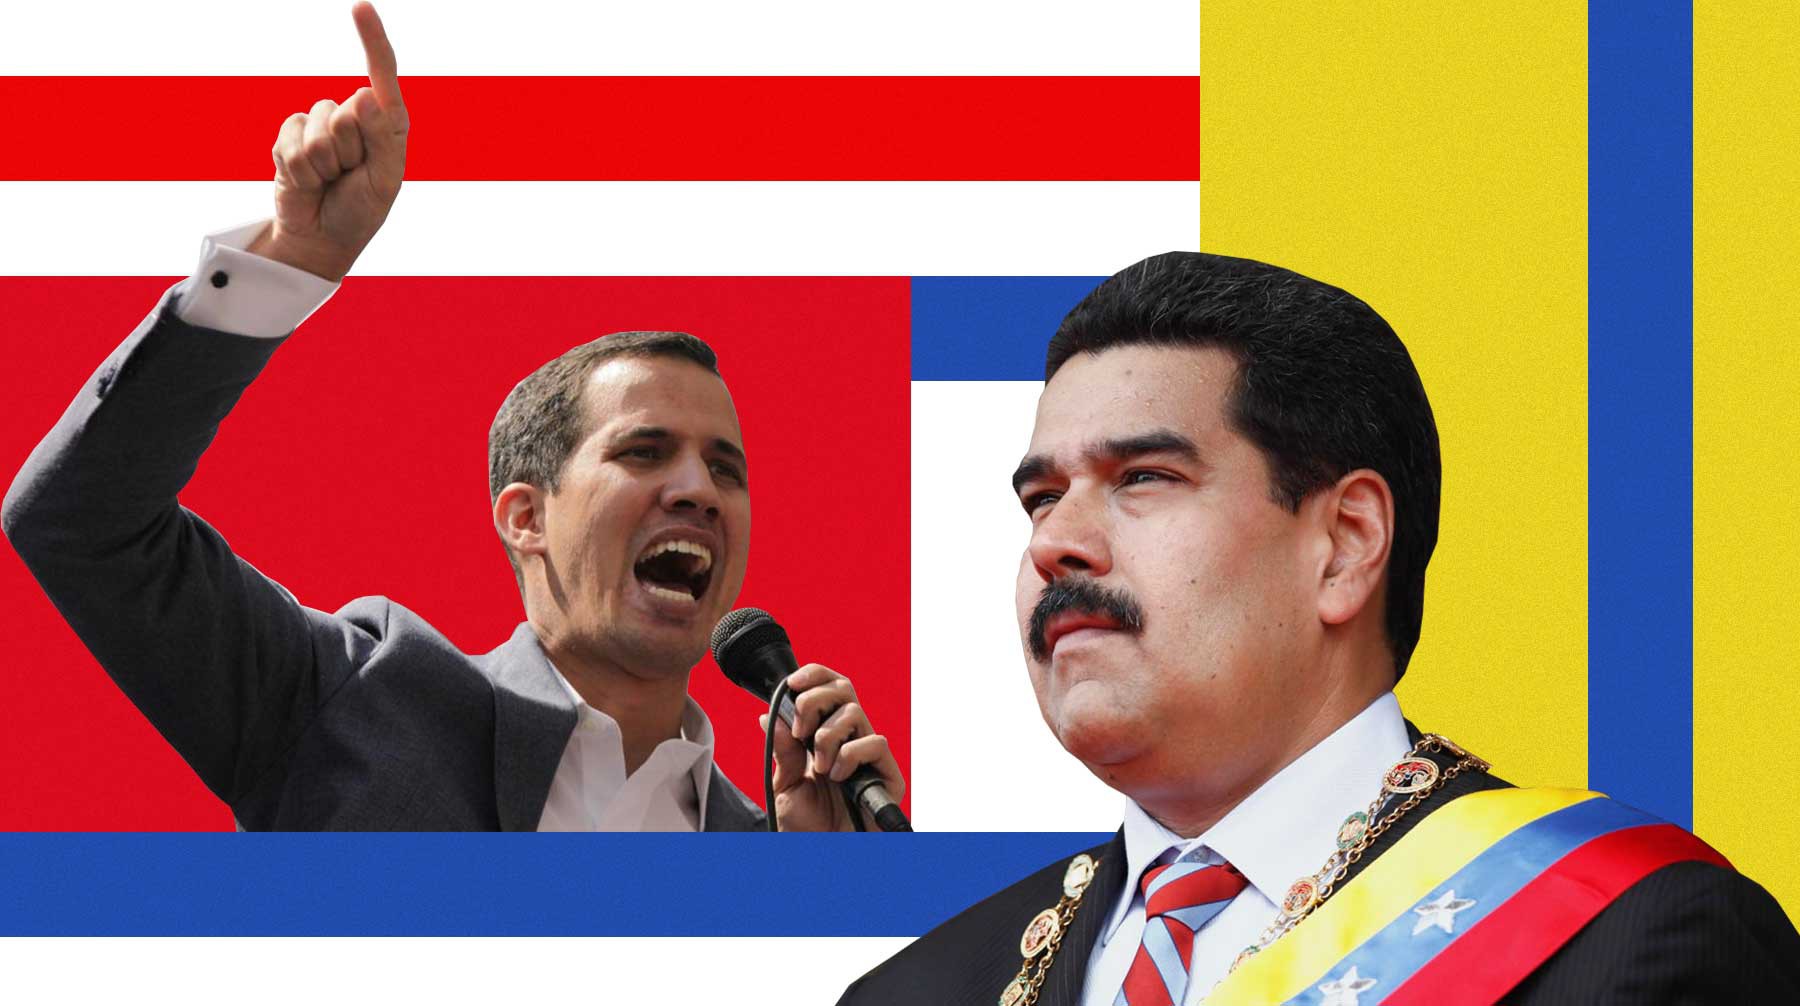 Dailystorm - Первомай по-латиноамерикански: Гуайдо и Мадуро — президенты разных Венесуэл